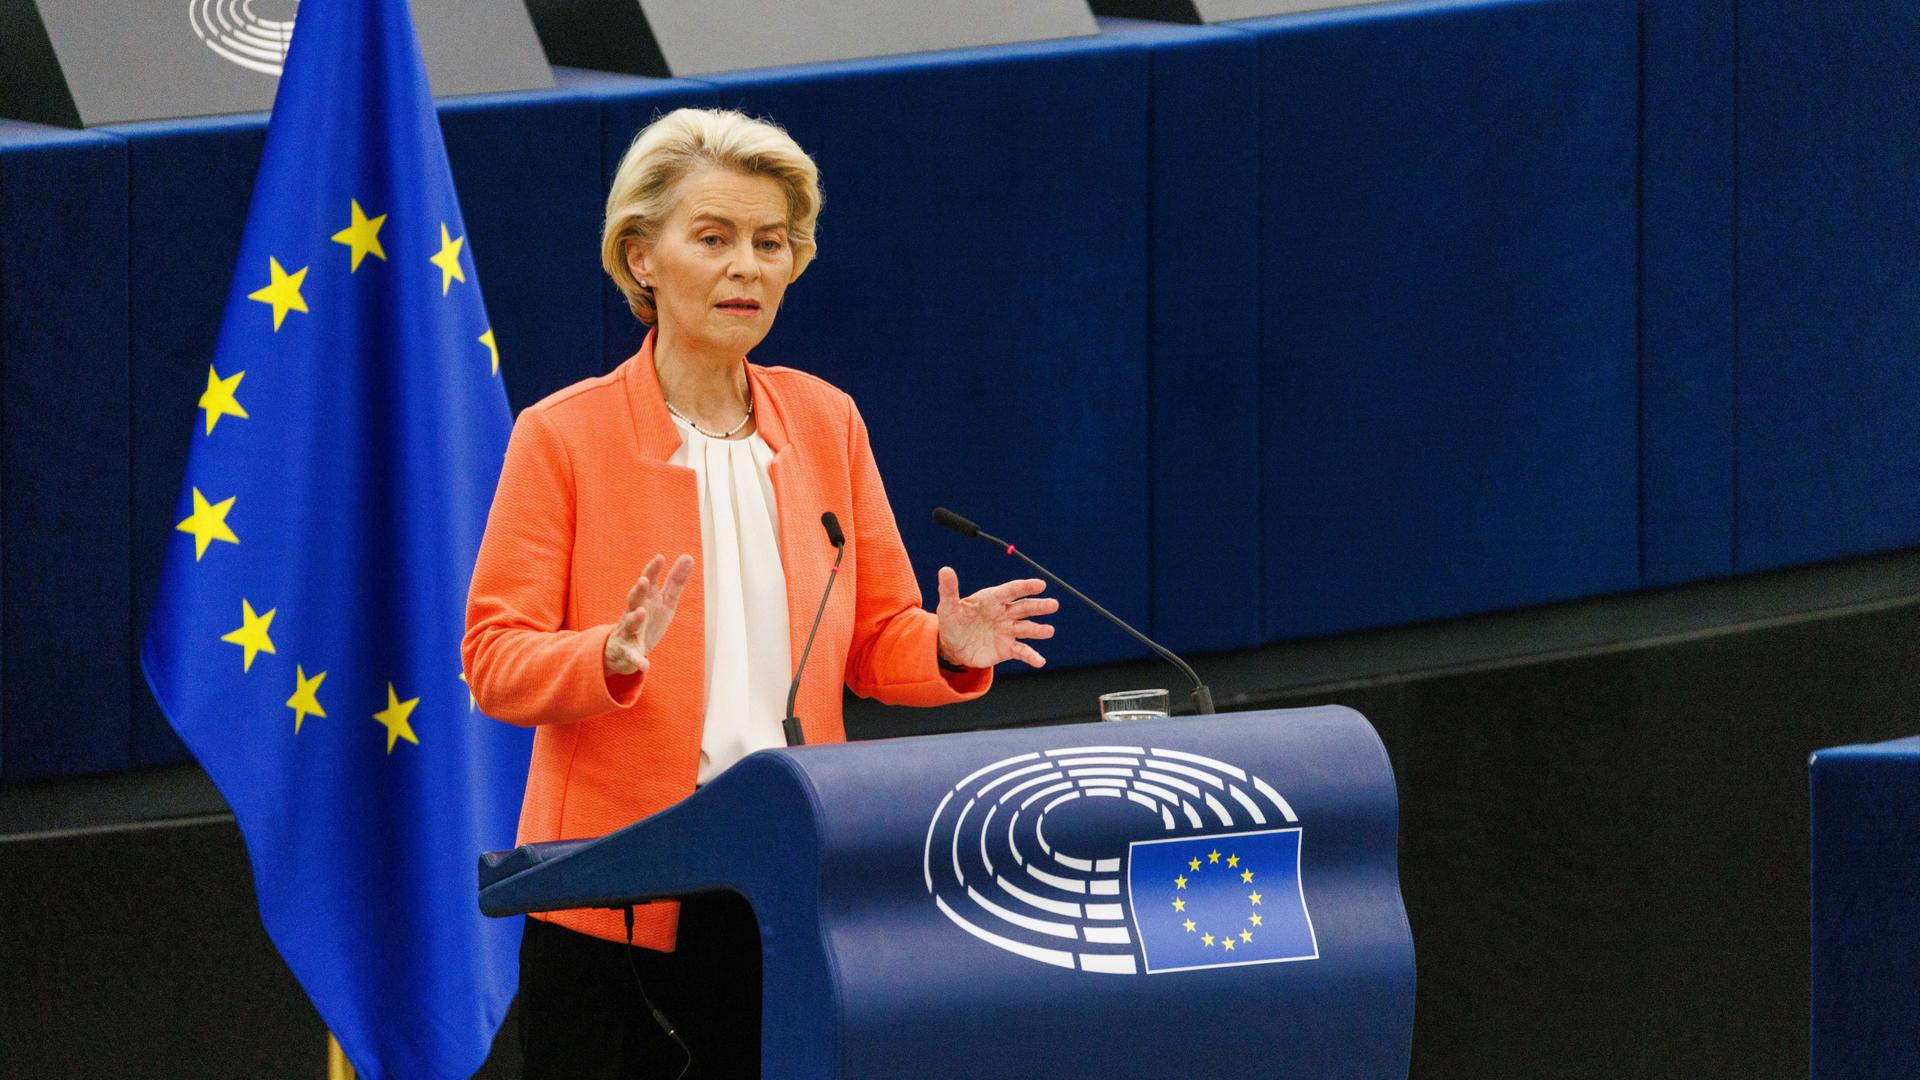 Frankreich, Straßburg: Ursula von der Leyen, Präsidentin der Europäischen Kommission, hält im Europäischen Parlament eine Rede über den Stand der Europäischen Union und ihre Pläne und Strategien für die Zukunft.